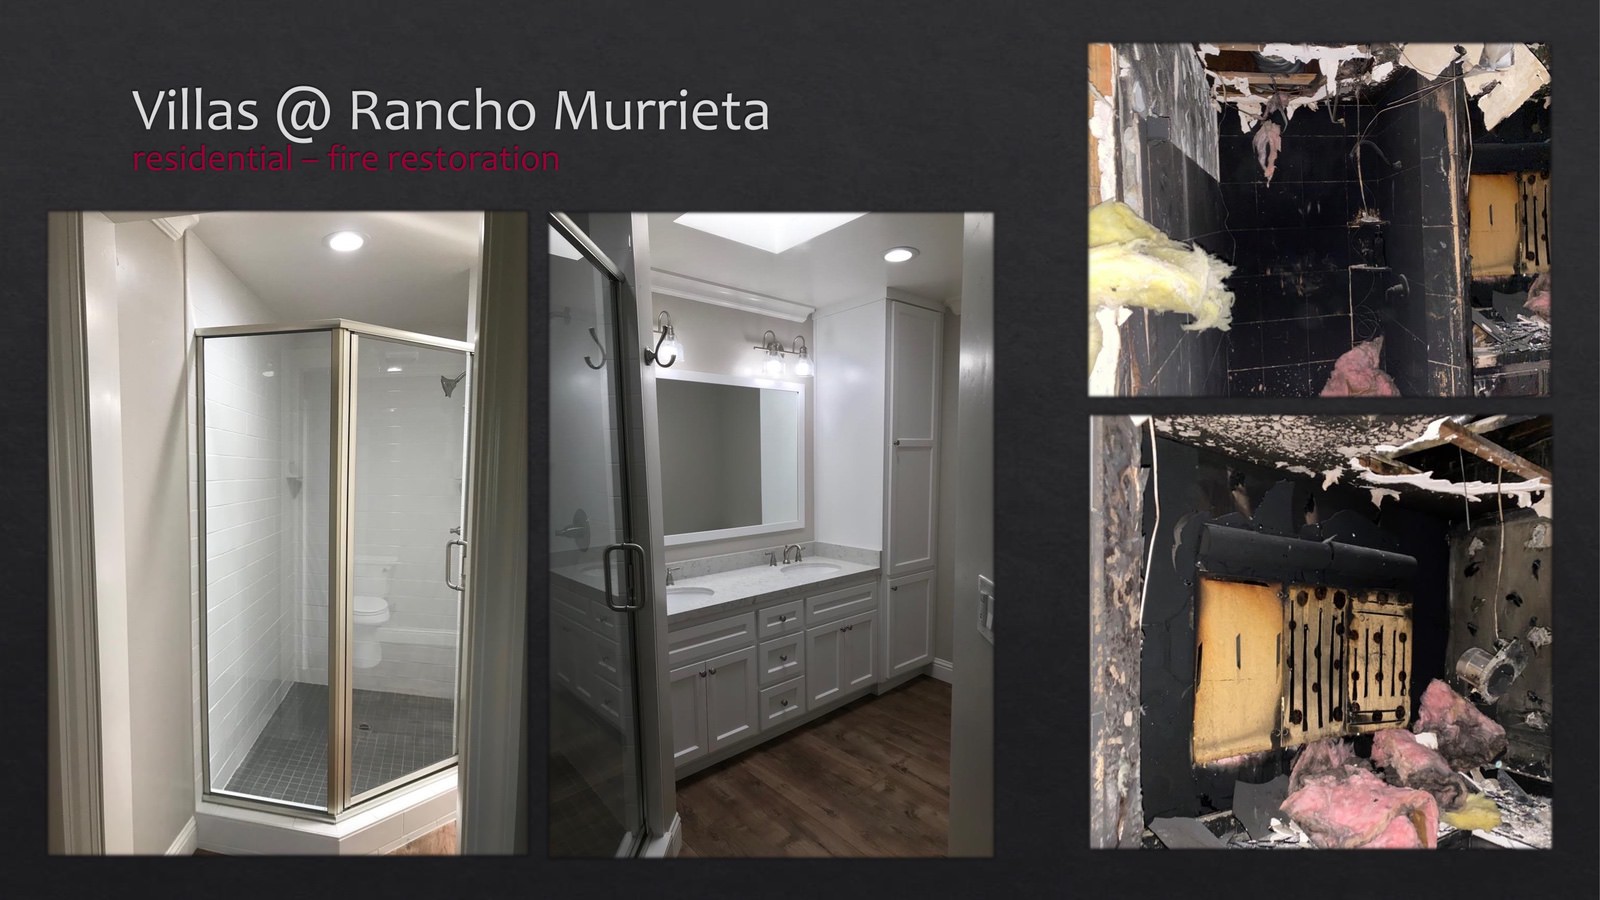 Rancho Murrieta Villas Residential fire restoration - bathroom - lightbox